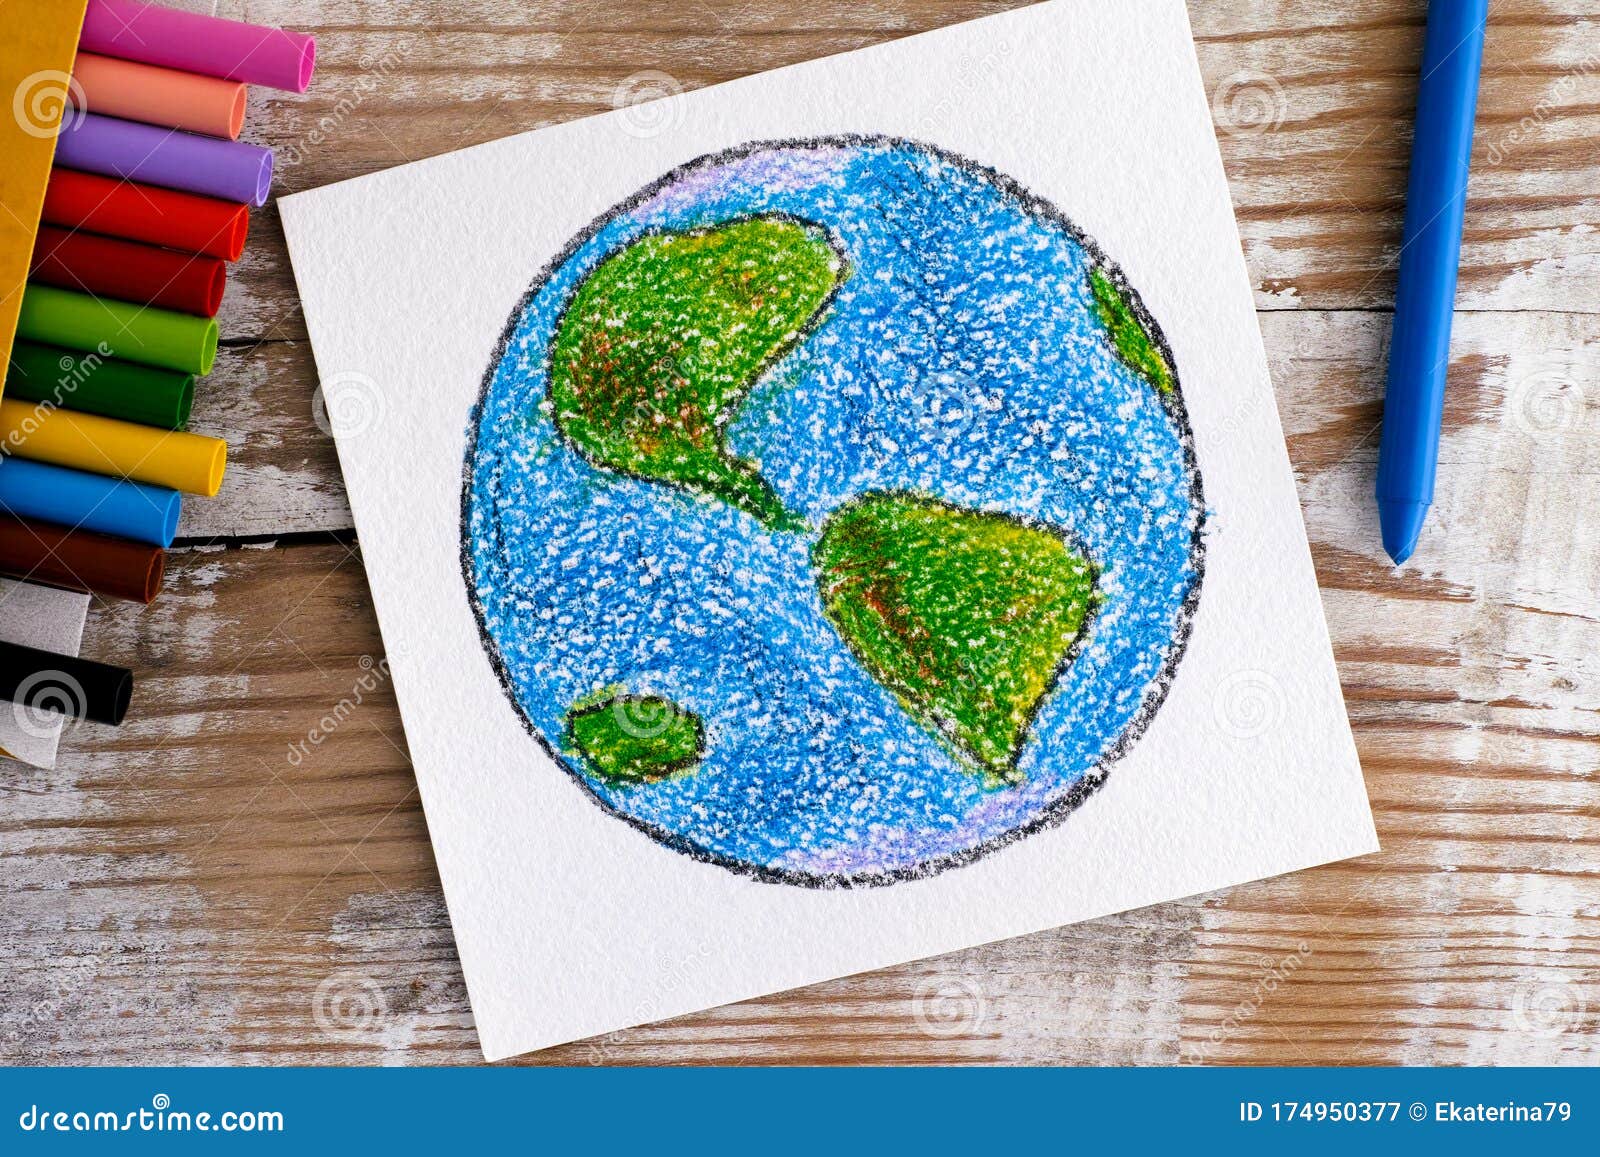 Dibujo a Mano Planeta Tierra Con Crayones De Cera. Fondo De Madera Imagen  de archivo - Imagen de azul, fondo: 174950377